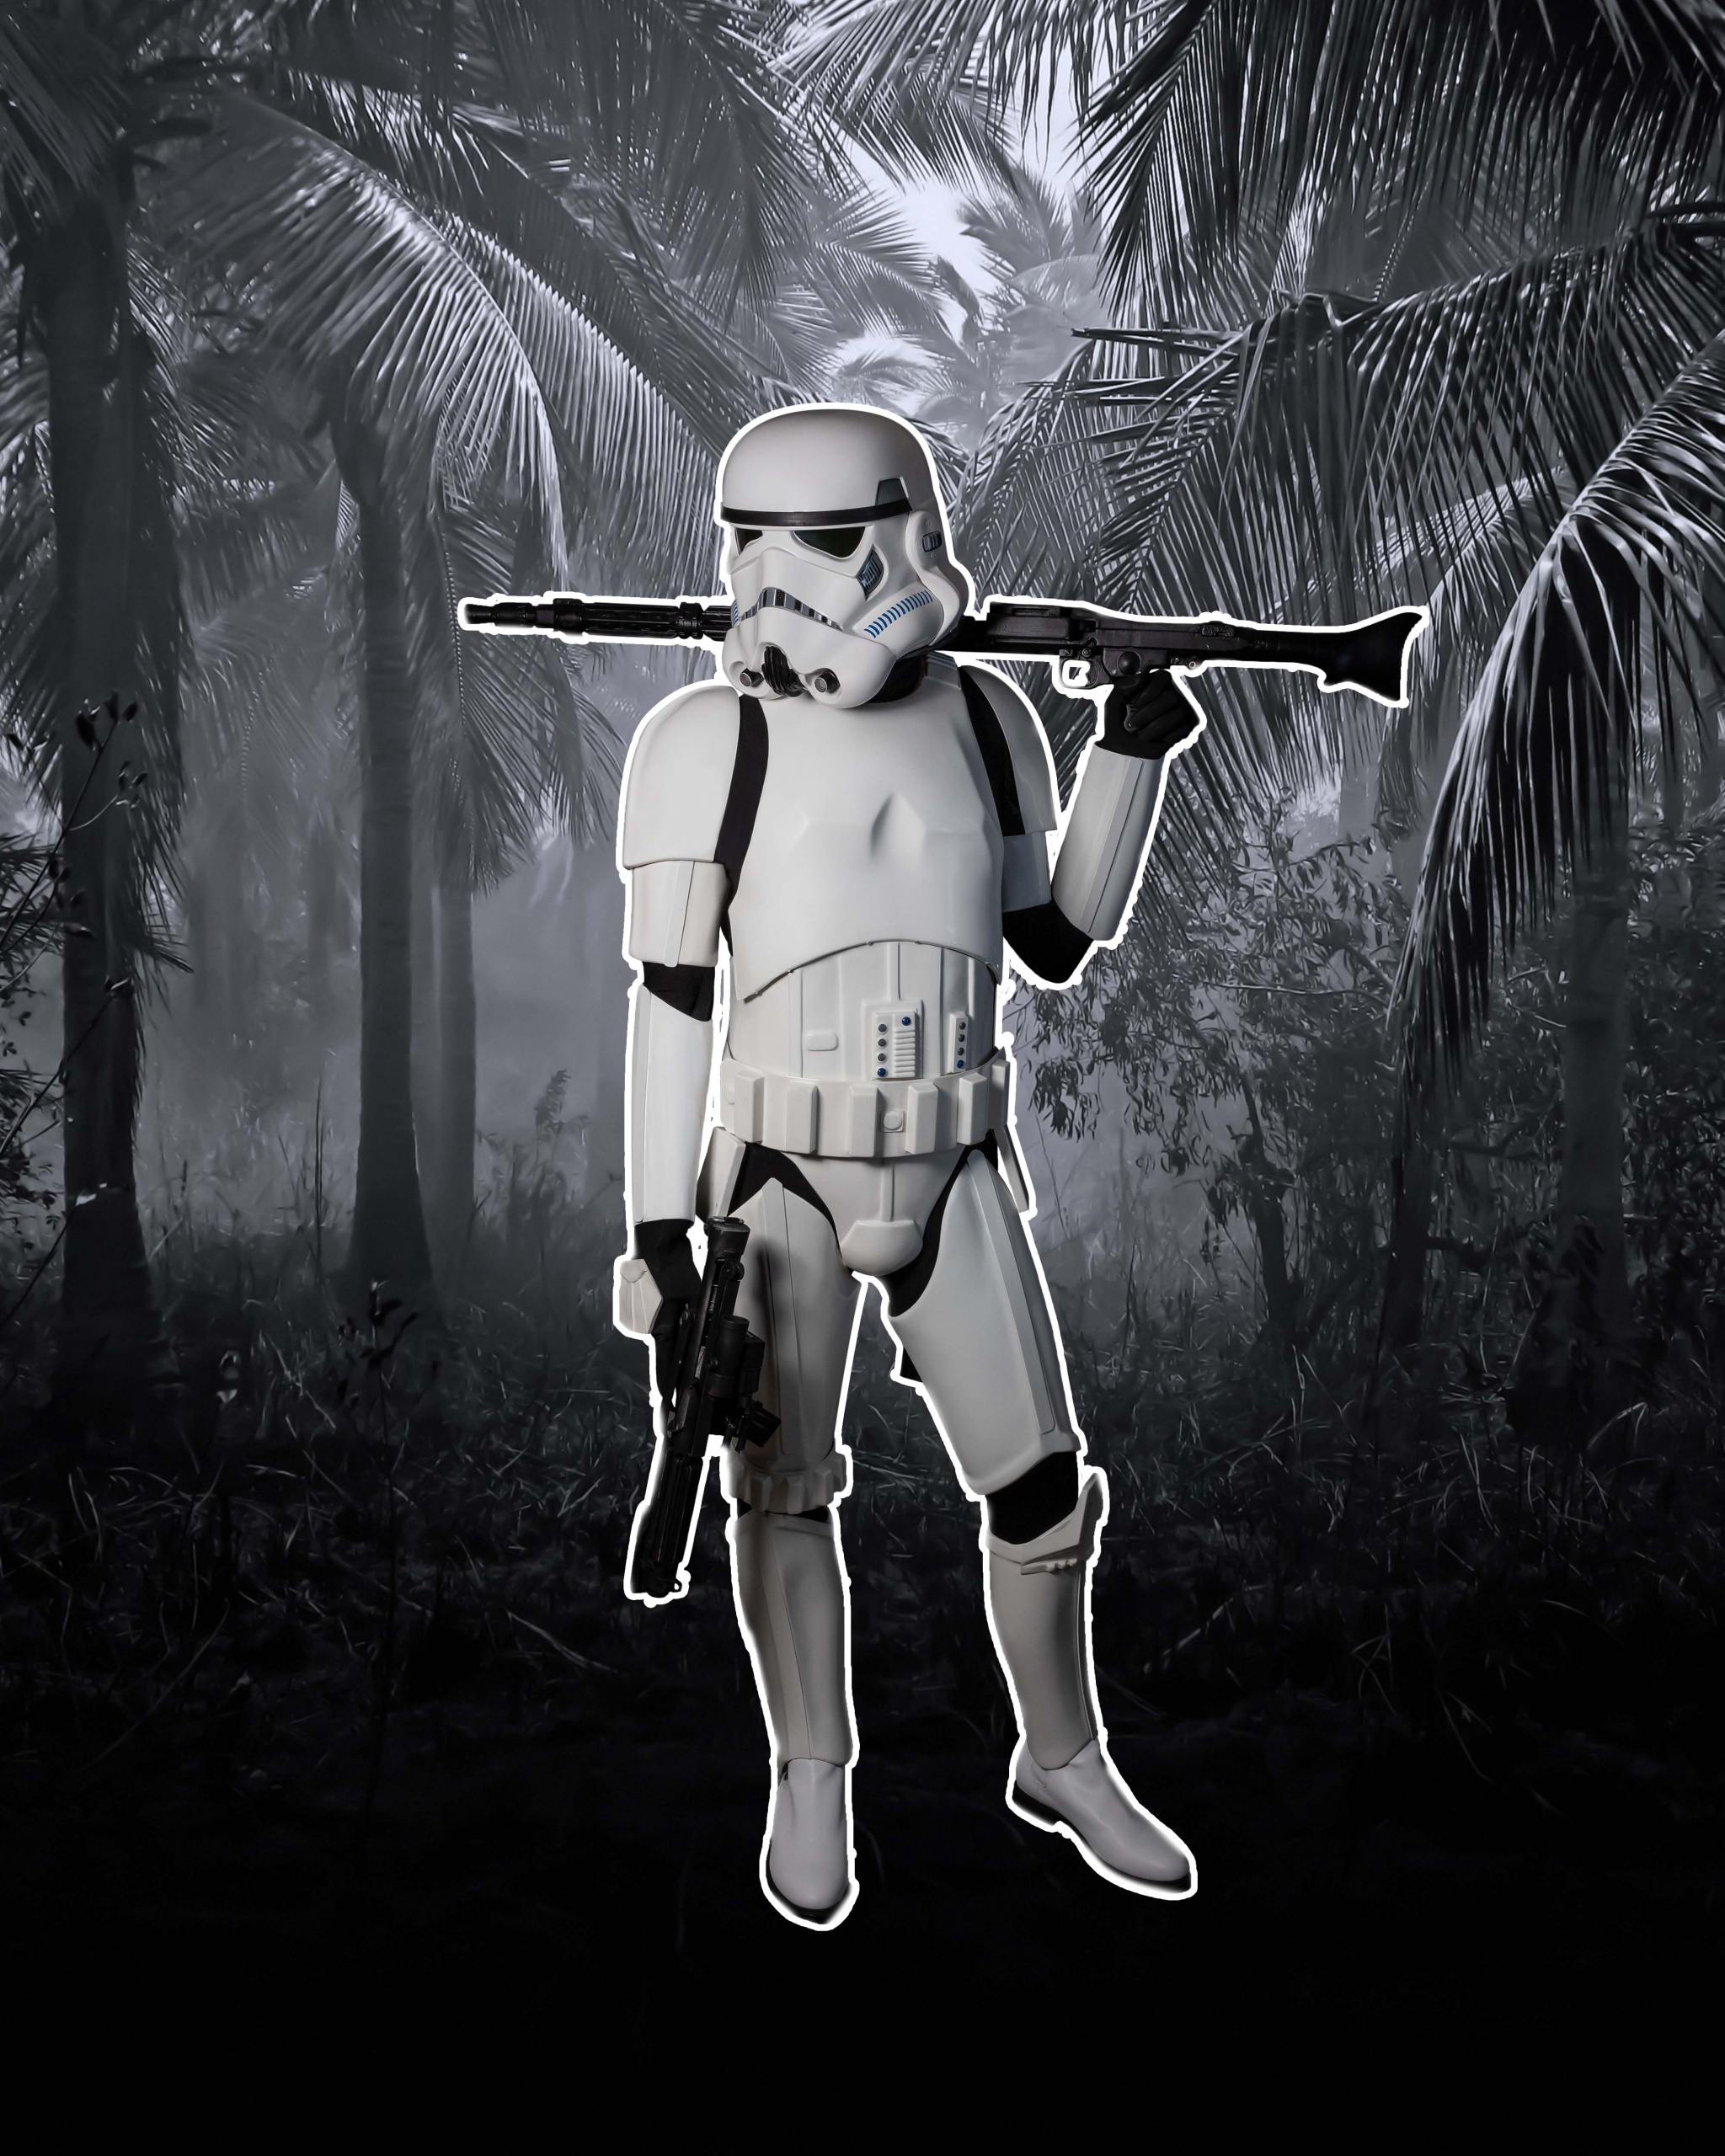 stormtrooper_jungle_comparison